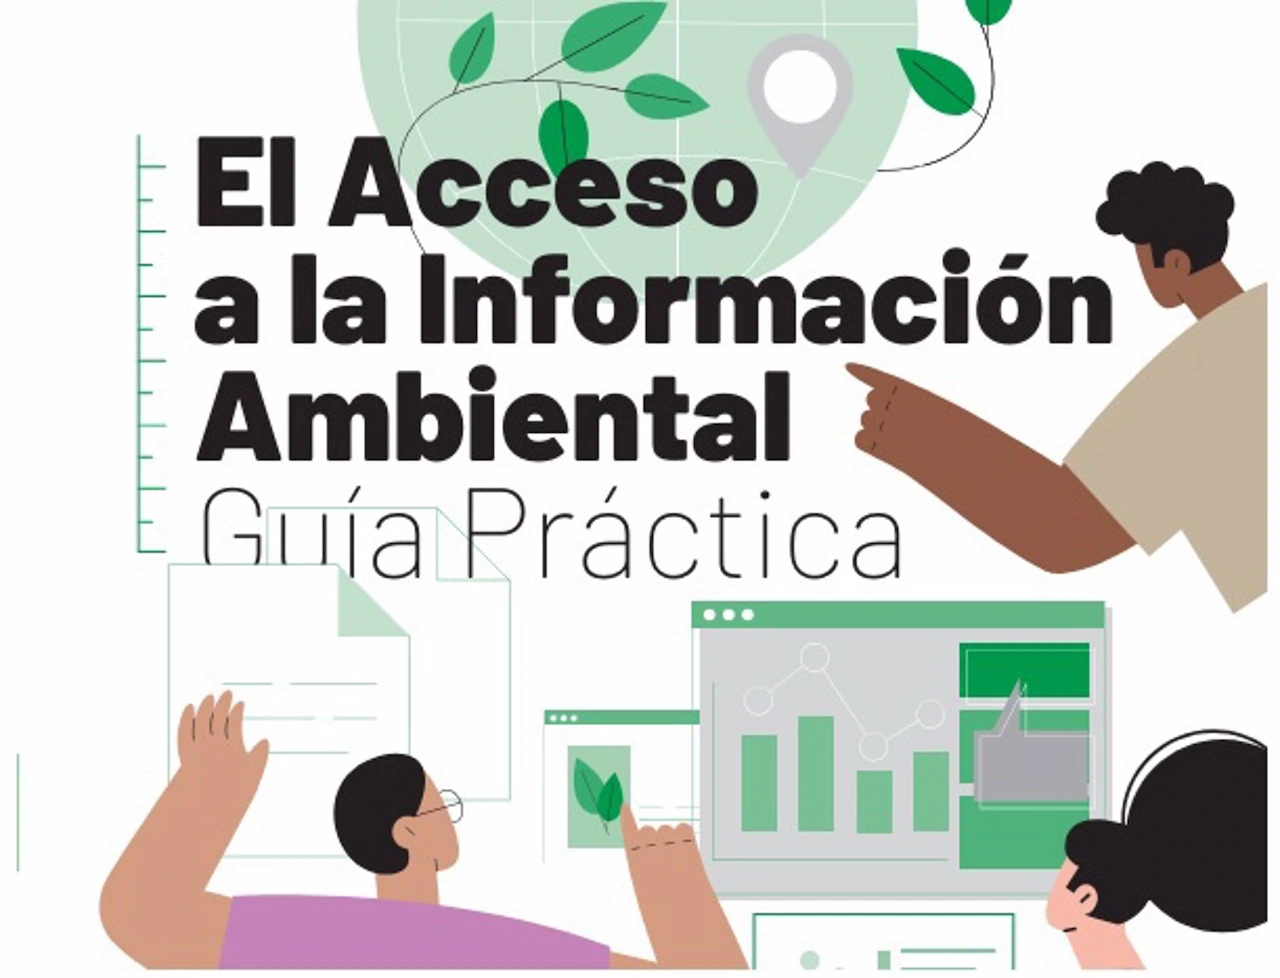 Derecho de acceso a la información ambiental / Imagen: Ecologistas en Acción